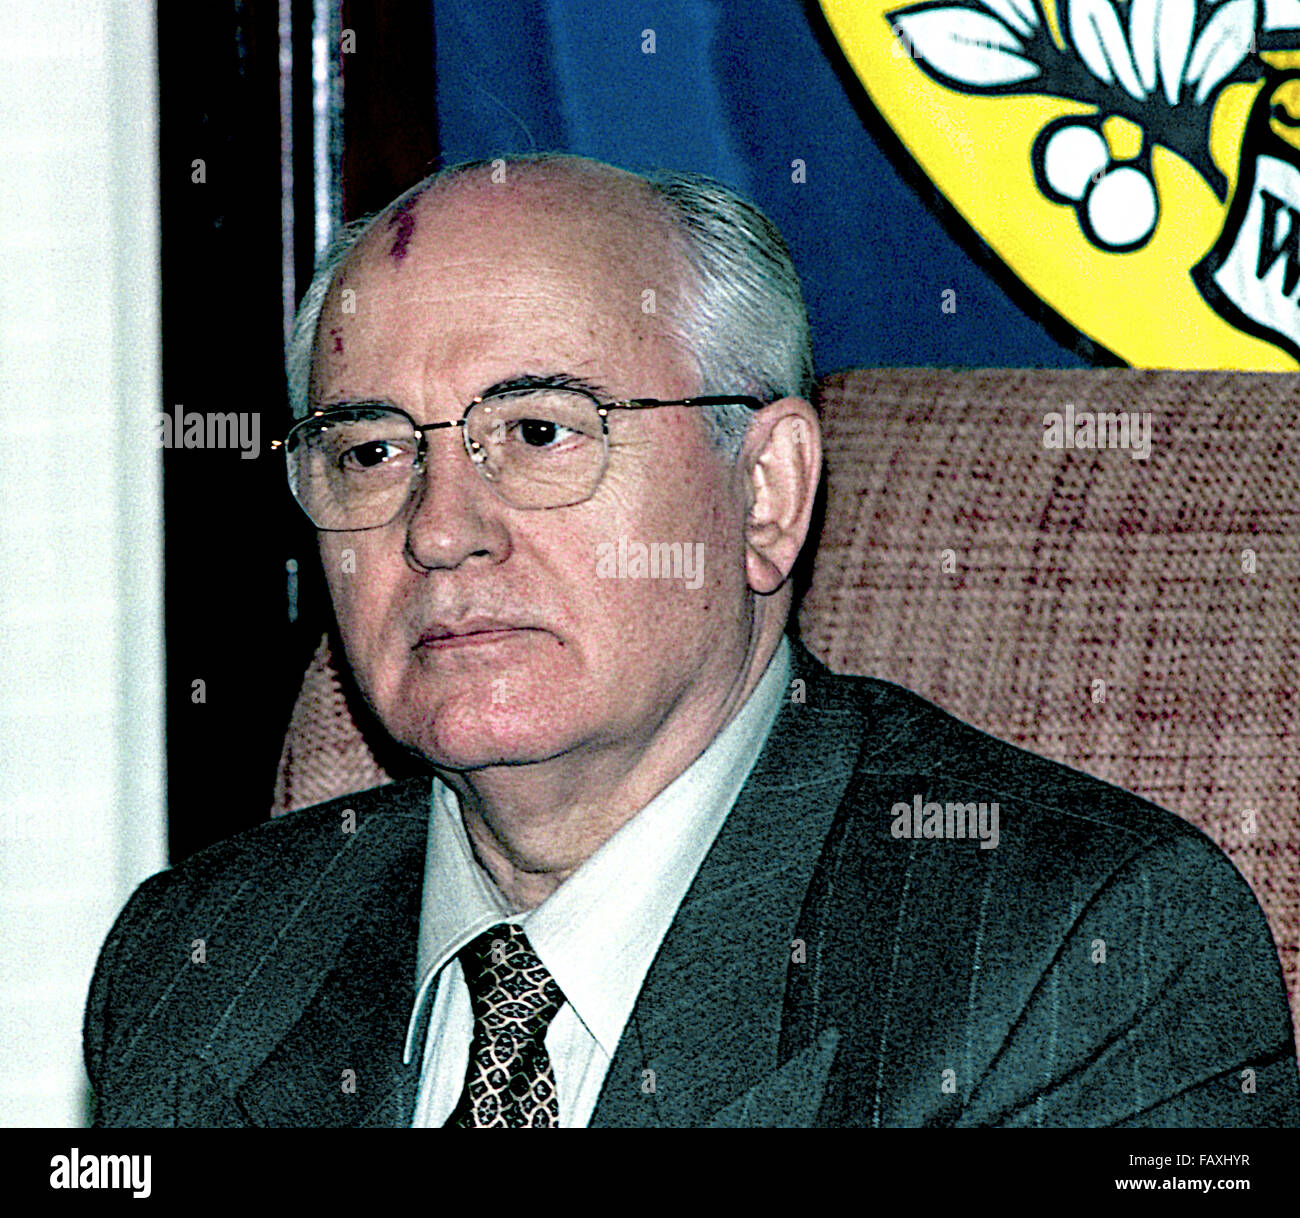 Washington, DC., USA, 25 octobre 1996, Mikhaïl Sergueïevitch Gorbatchev au National Press Club. Il était le huitième et dernier chef de l'Union soviétique, ayant servi comme Secrétaire Général du Parti communiste de l'Union soviétique de 1985 à 1991, lorsque le parti a été dissous. Il a occupé le poste de chef de l'Etat à partir de 1988 jusqu'à sa dissolution en 1991 (le titre de président du Présidium du Soviet suprême de 1988 à 1989, en tant que Président du Soviet suprême de 1989 à 1990, et comme président de l'Union soviétique de 1990 à 1991). Banque D'Images